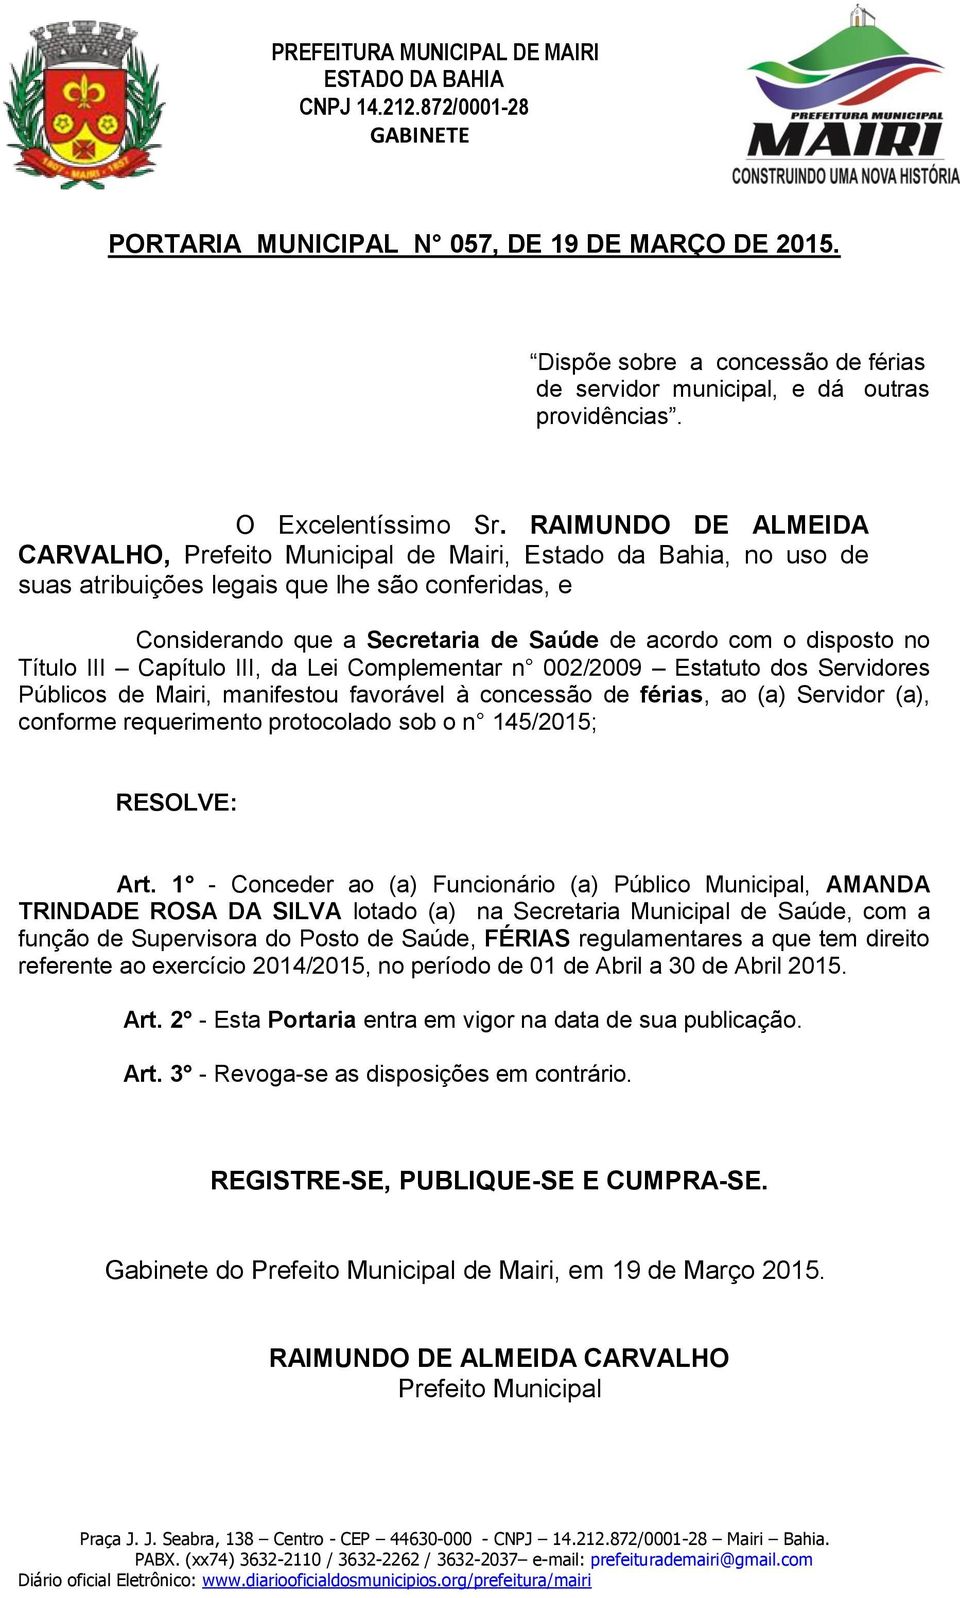 1 - Conceder ao (a) Funcionário (a) Público Municipal, AMANDA TRINDADE ROSA DA SILVA lotado (a) na Secretaria Municipal de